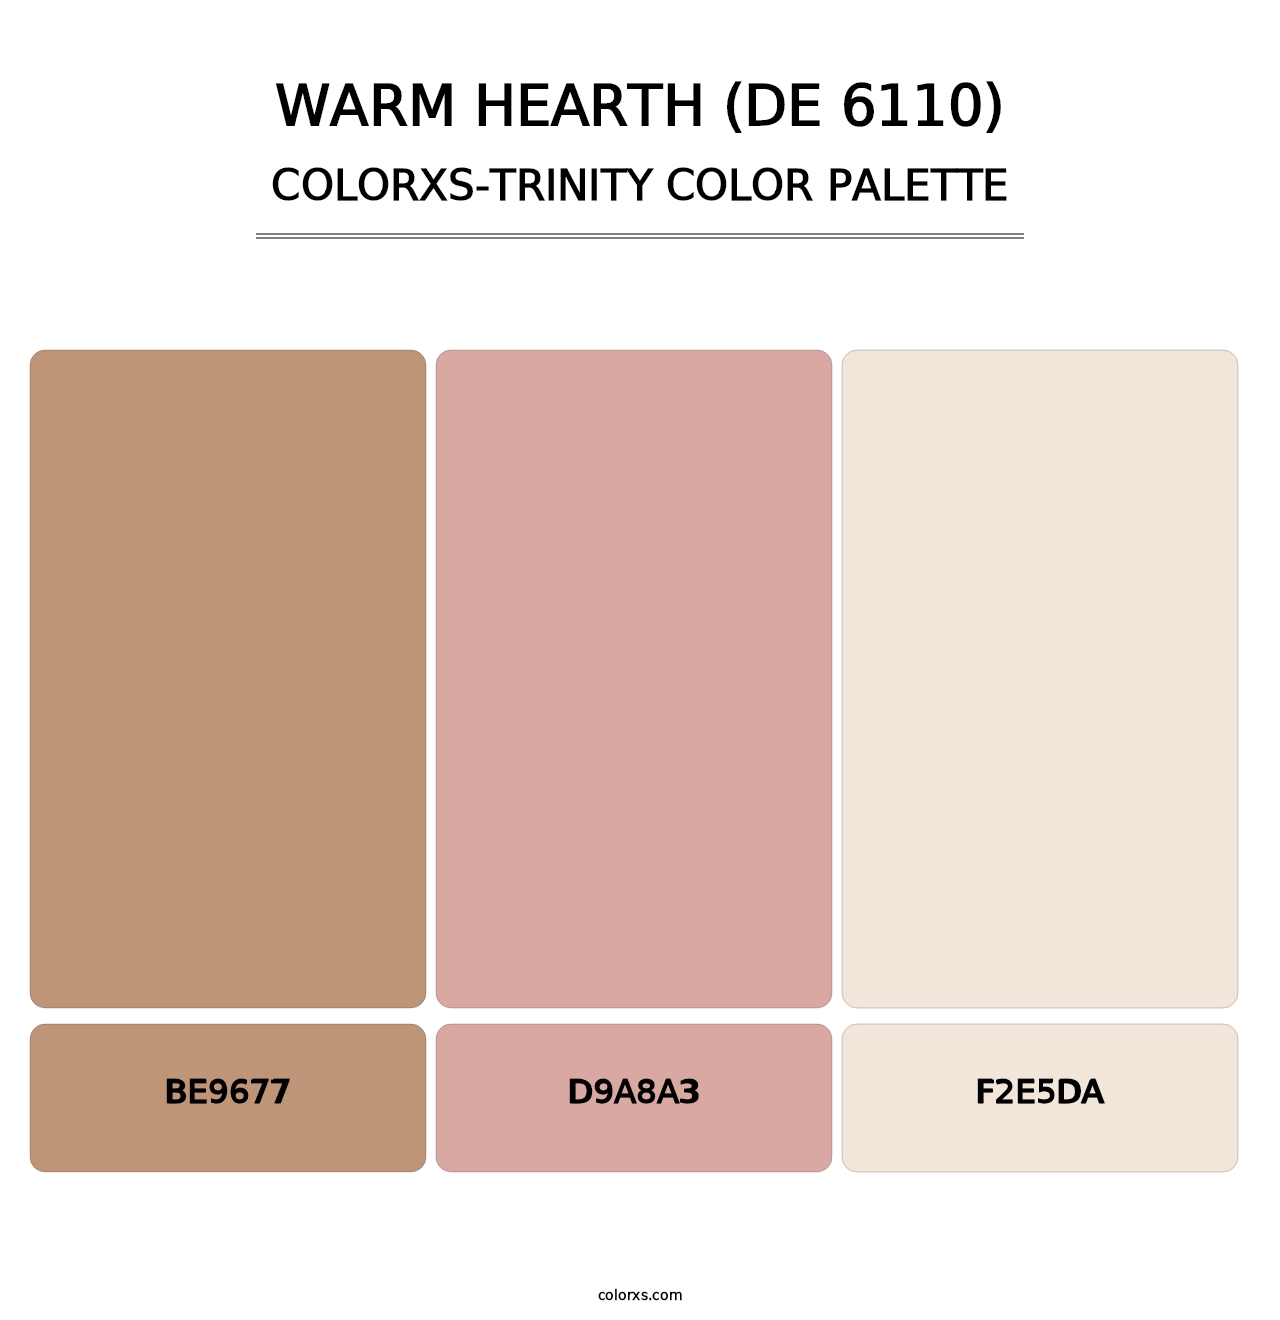 Warm Hearth (DE 6110) - Colorxs Trinity Palette